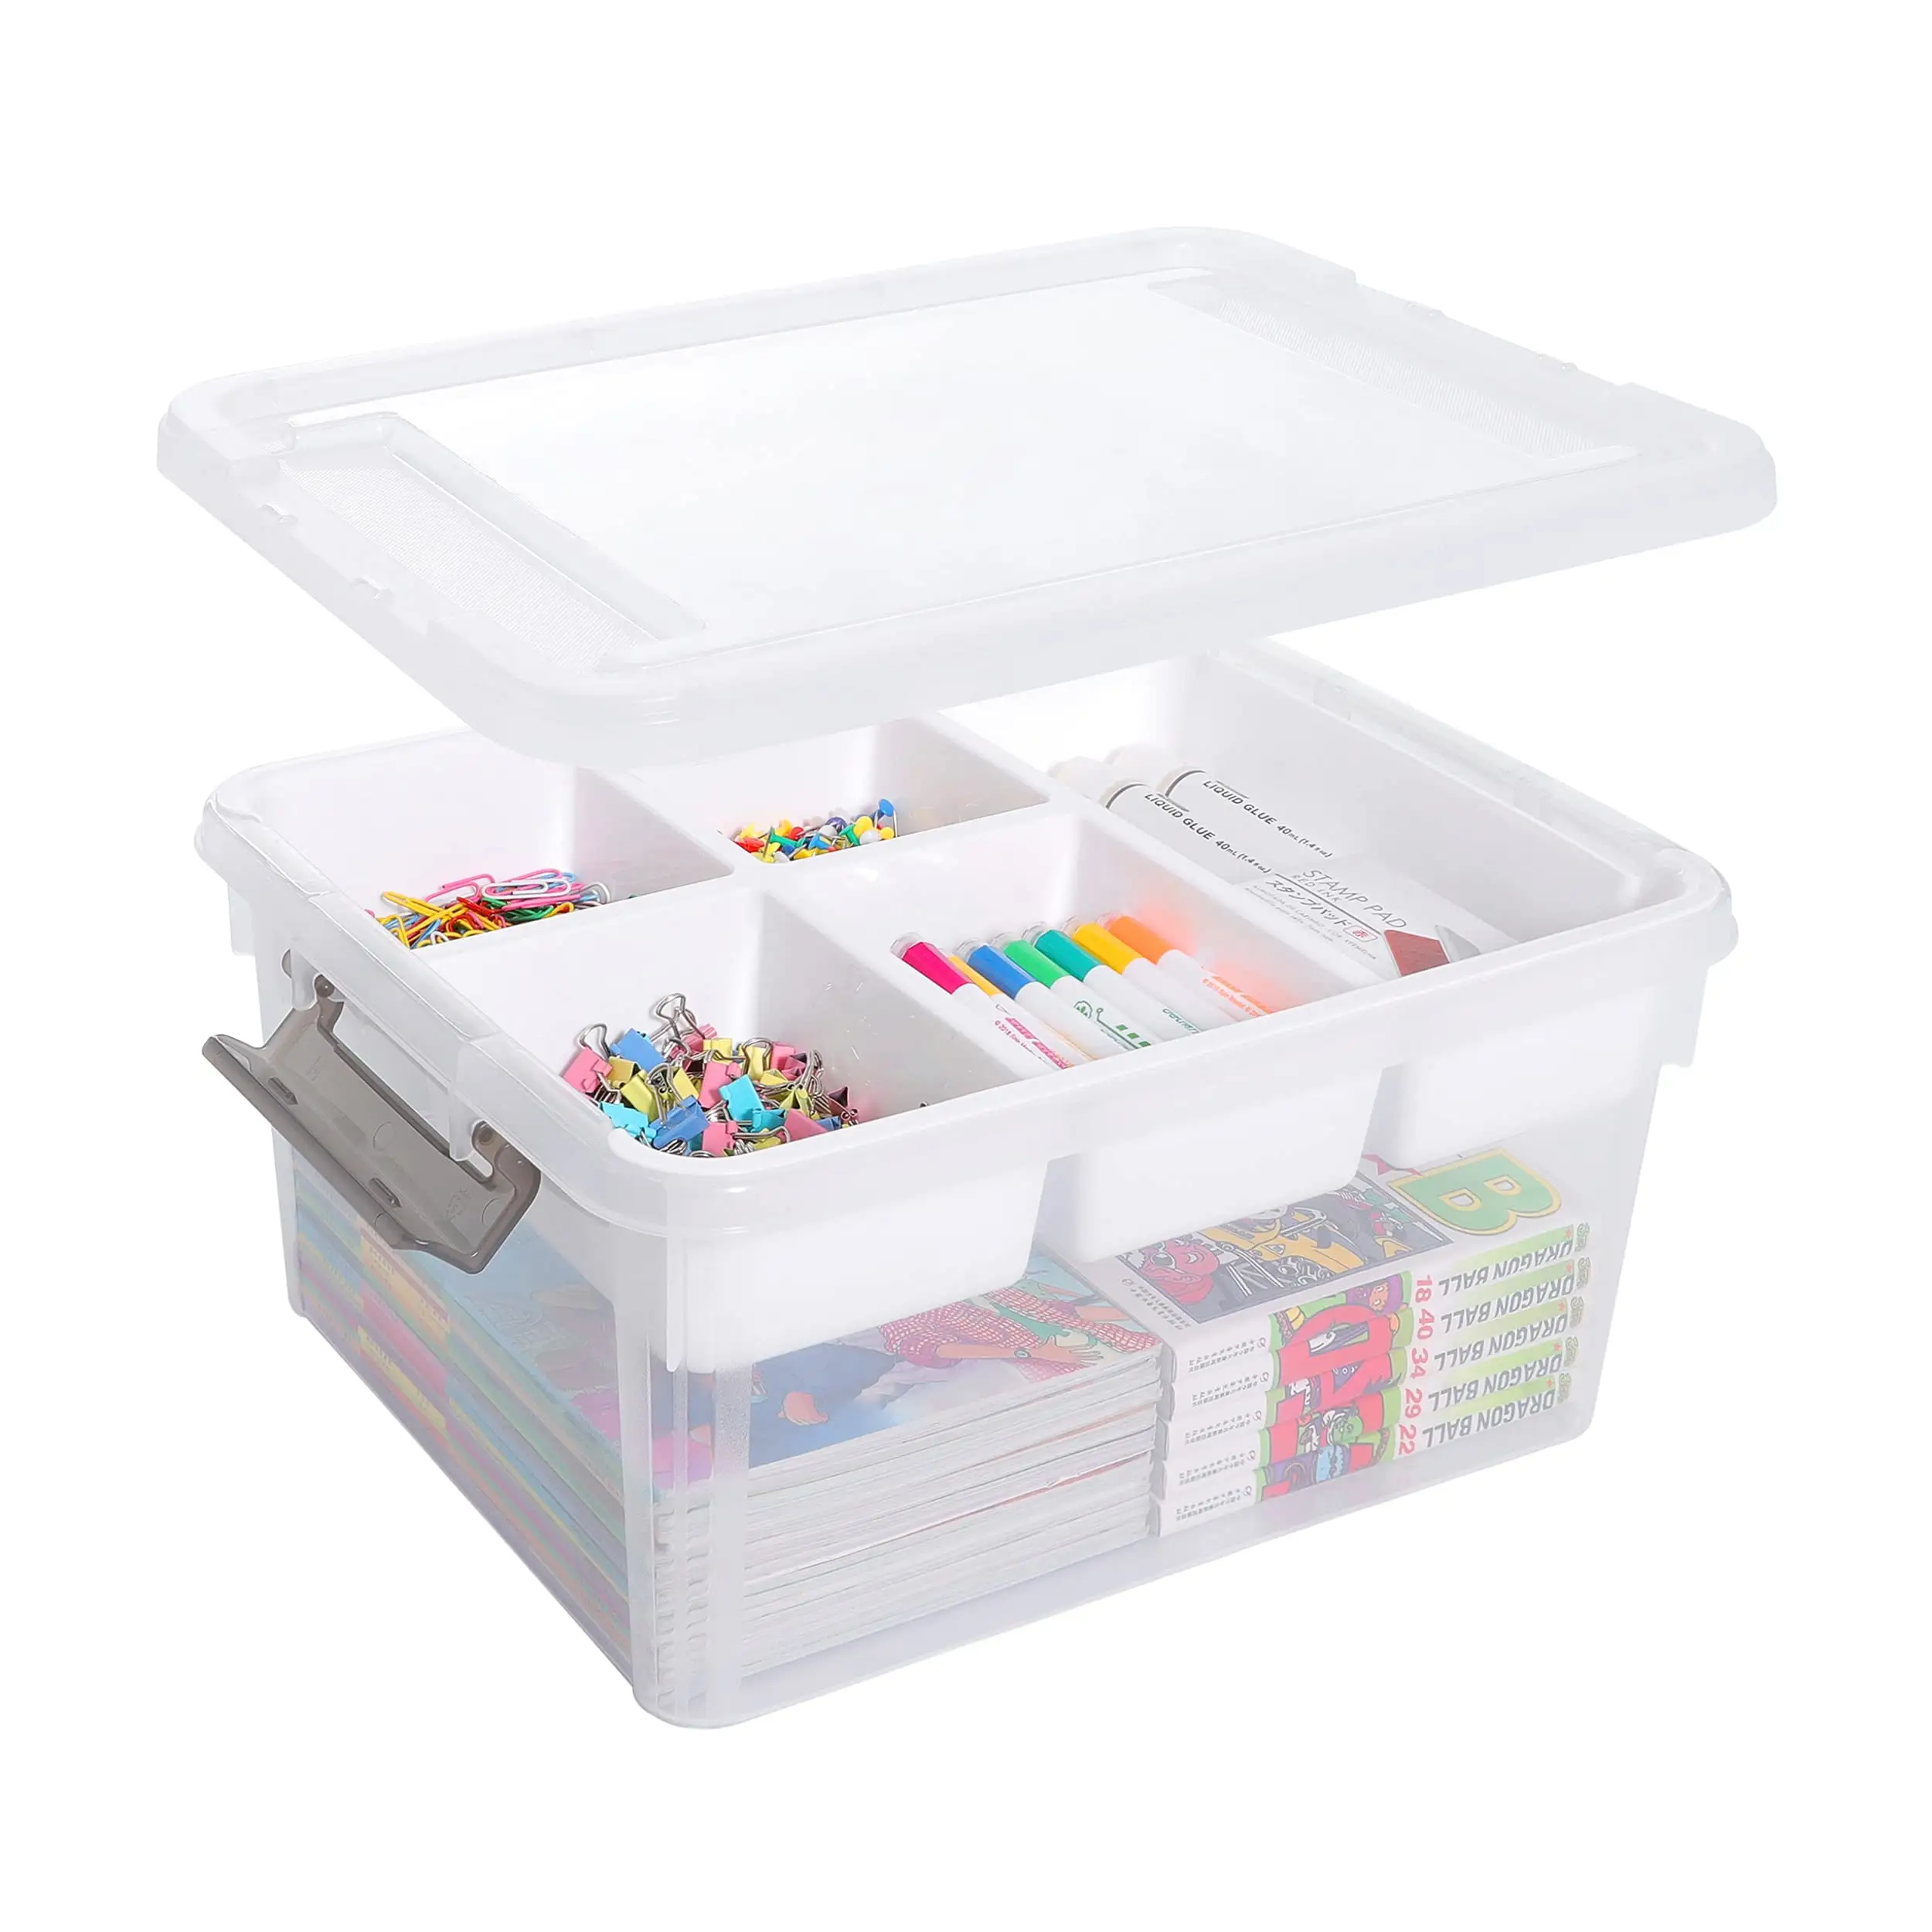 NISEVEN, gran oferta, contenedor de almacenamiento transparente grande, organizadores artesanales de cuentas de Lego y caja de almacenamiento de plástico con bandeja extraíble